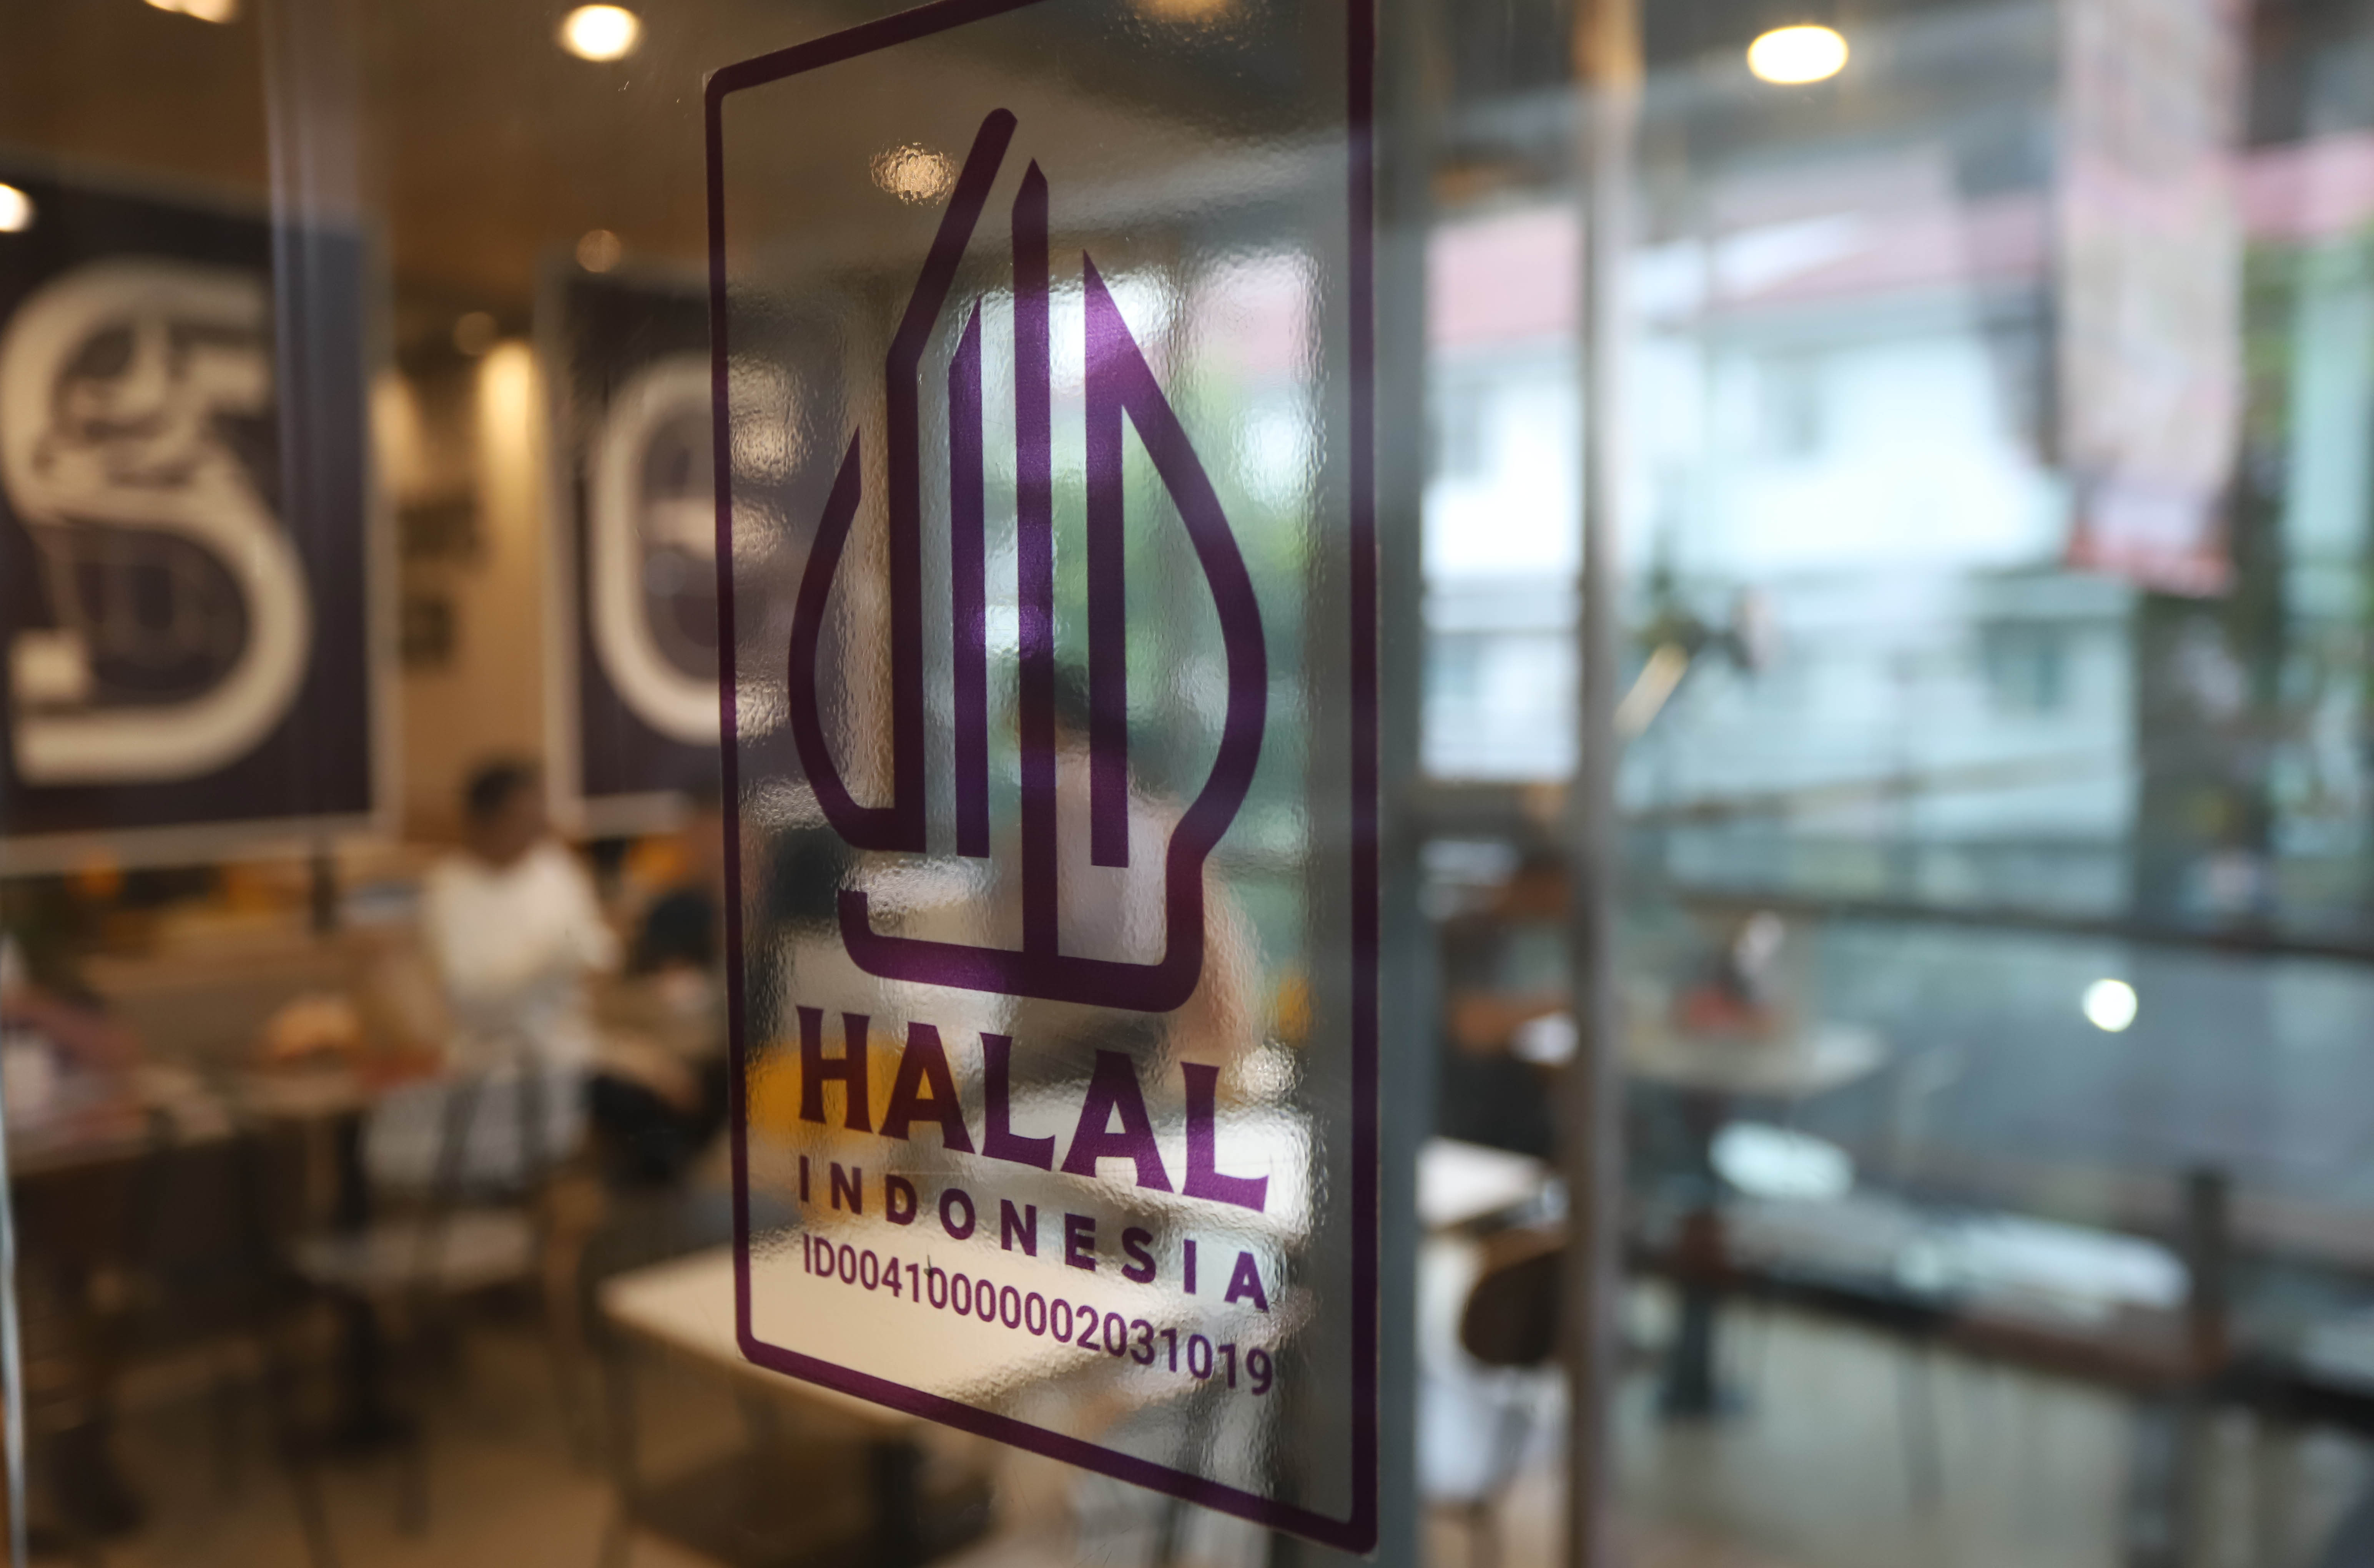 Stiker Halal yang tertempel di pintu masuk salah satu restoran siap saji di Salemba, Jakarta, Jumat (15/3). (Sinarharapan.com/Oke Atmaja)